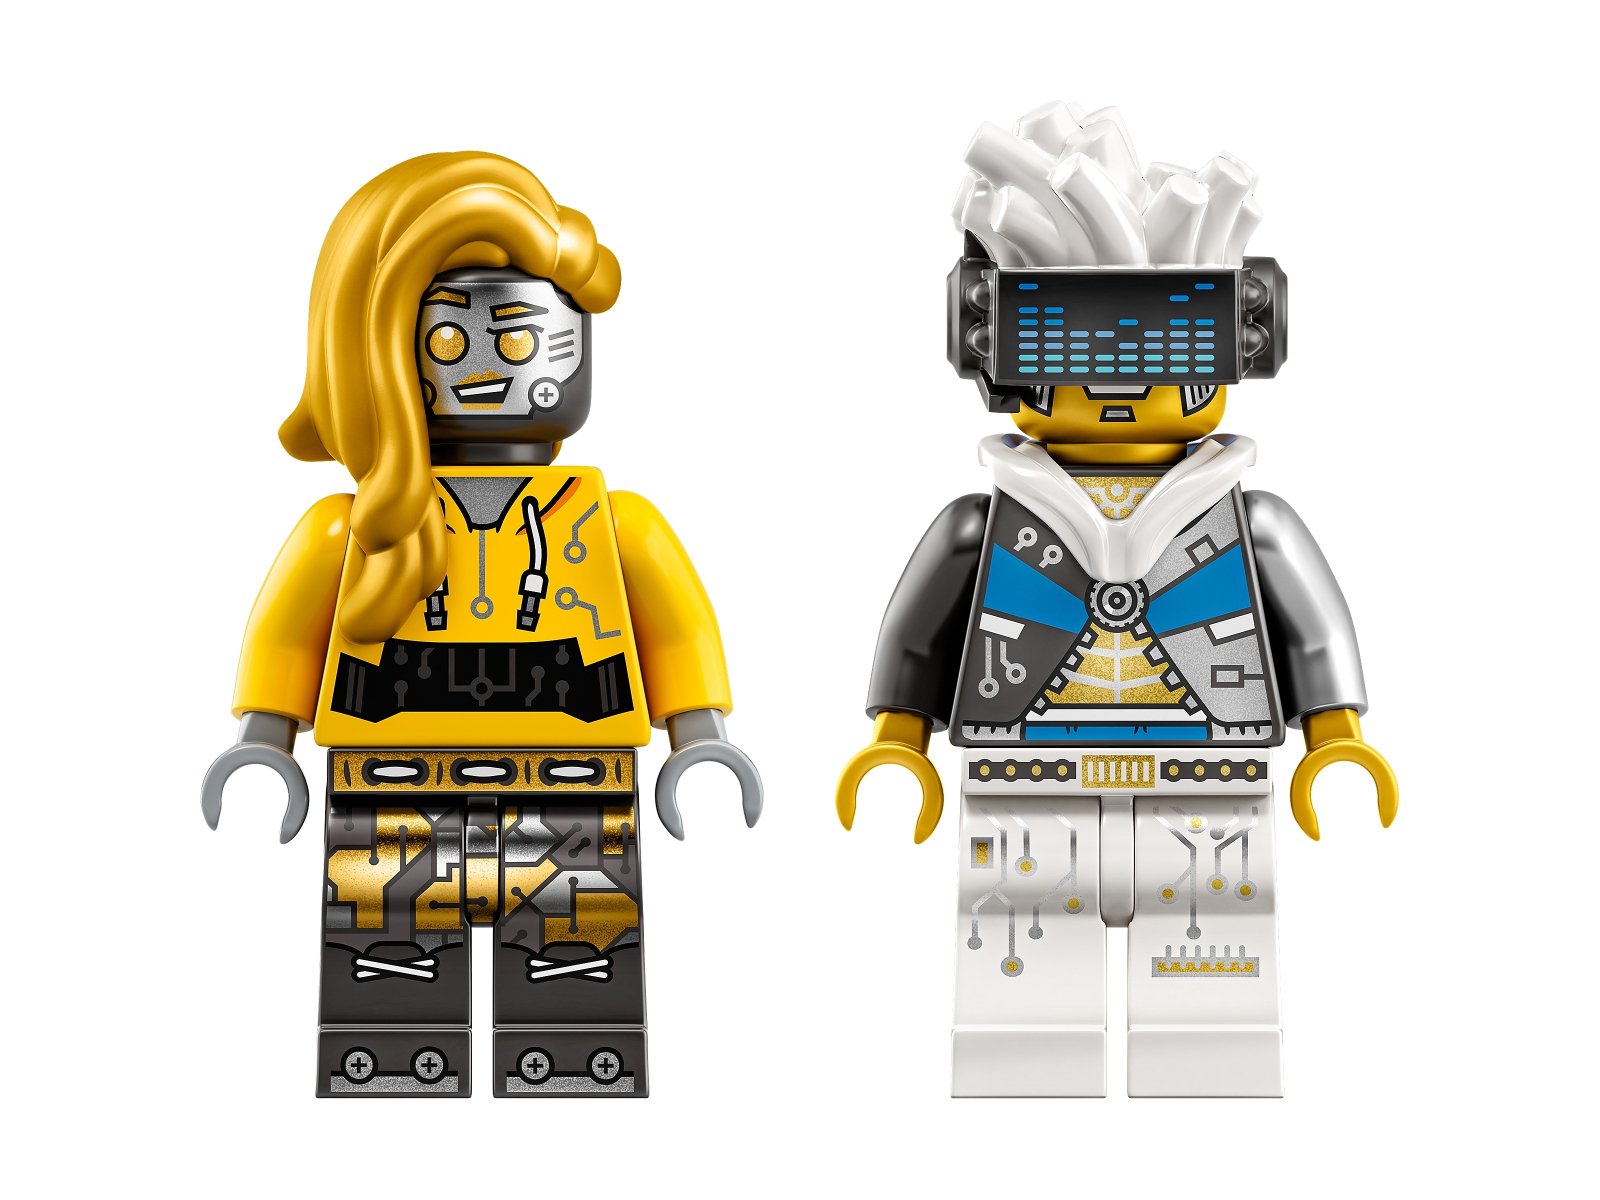 LEGO 43112 Robo HipHop Car